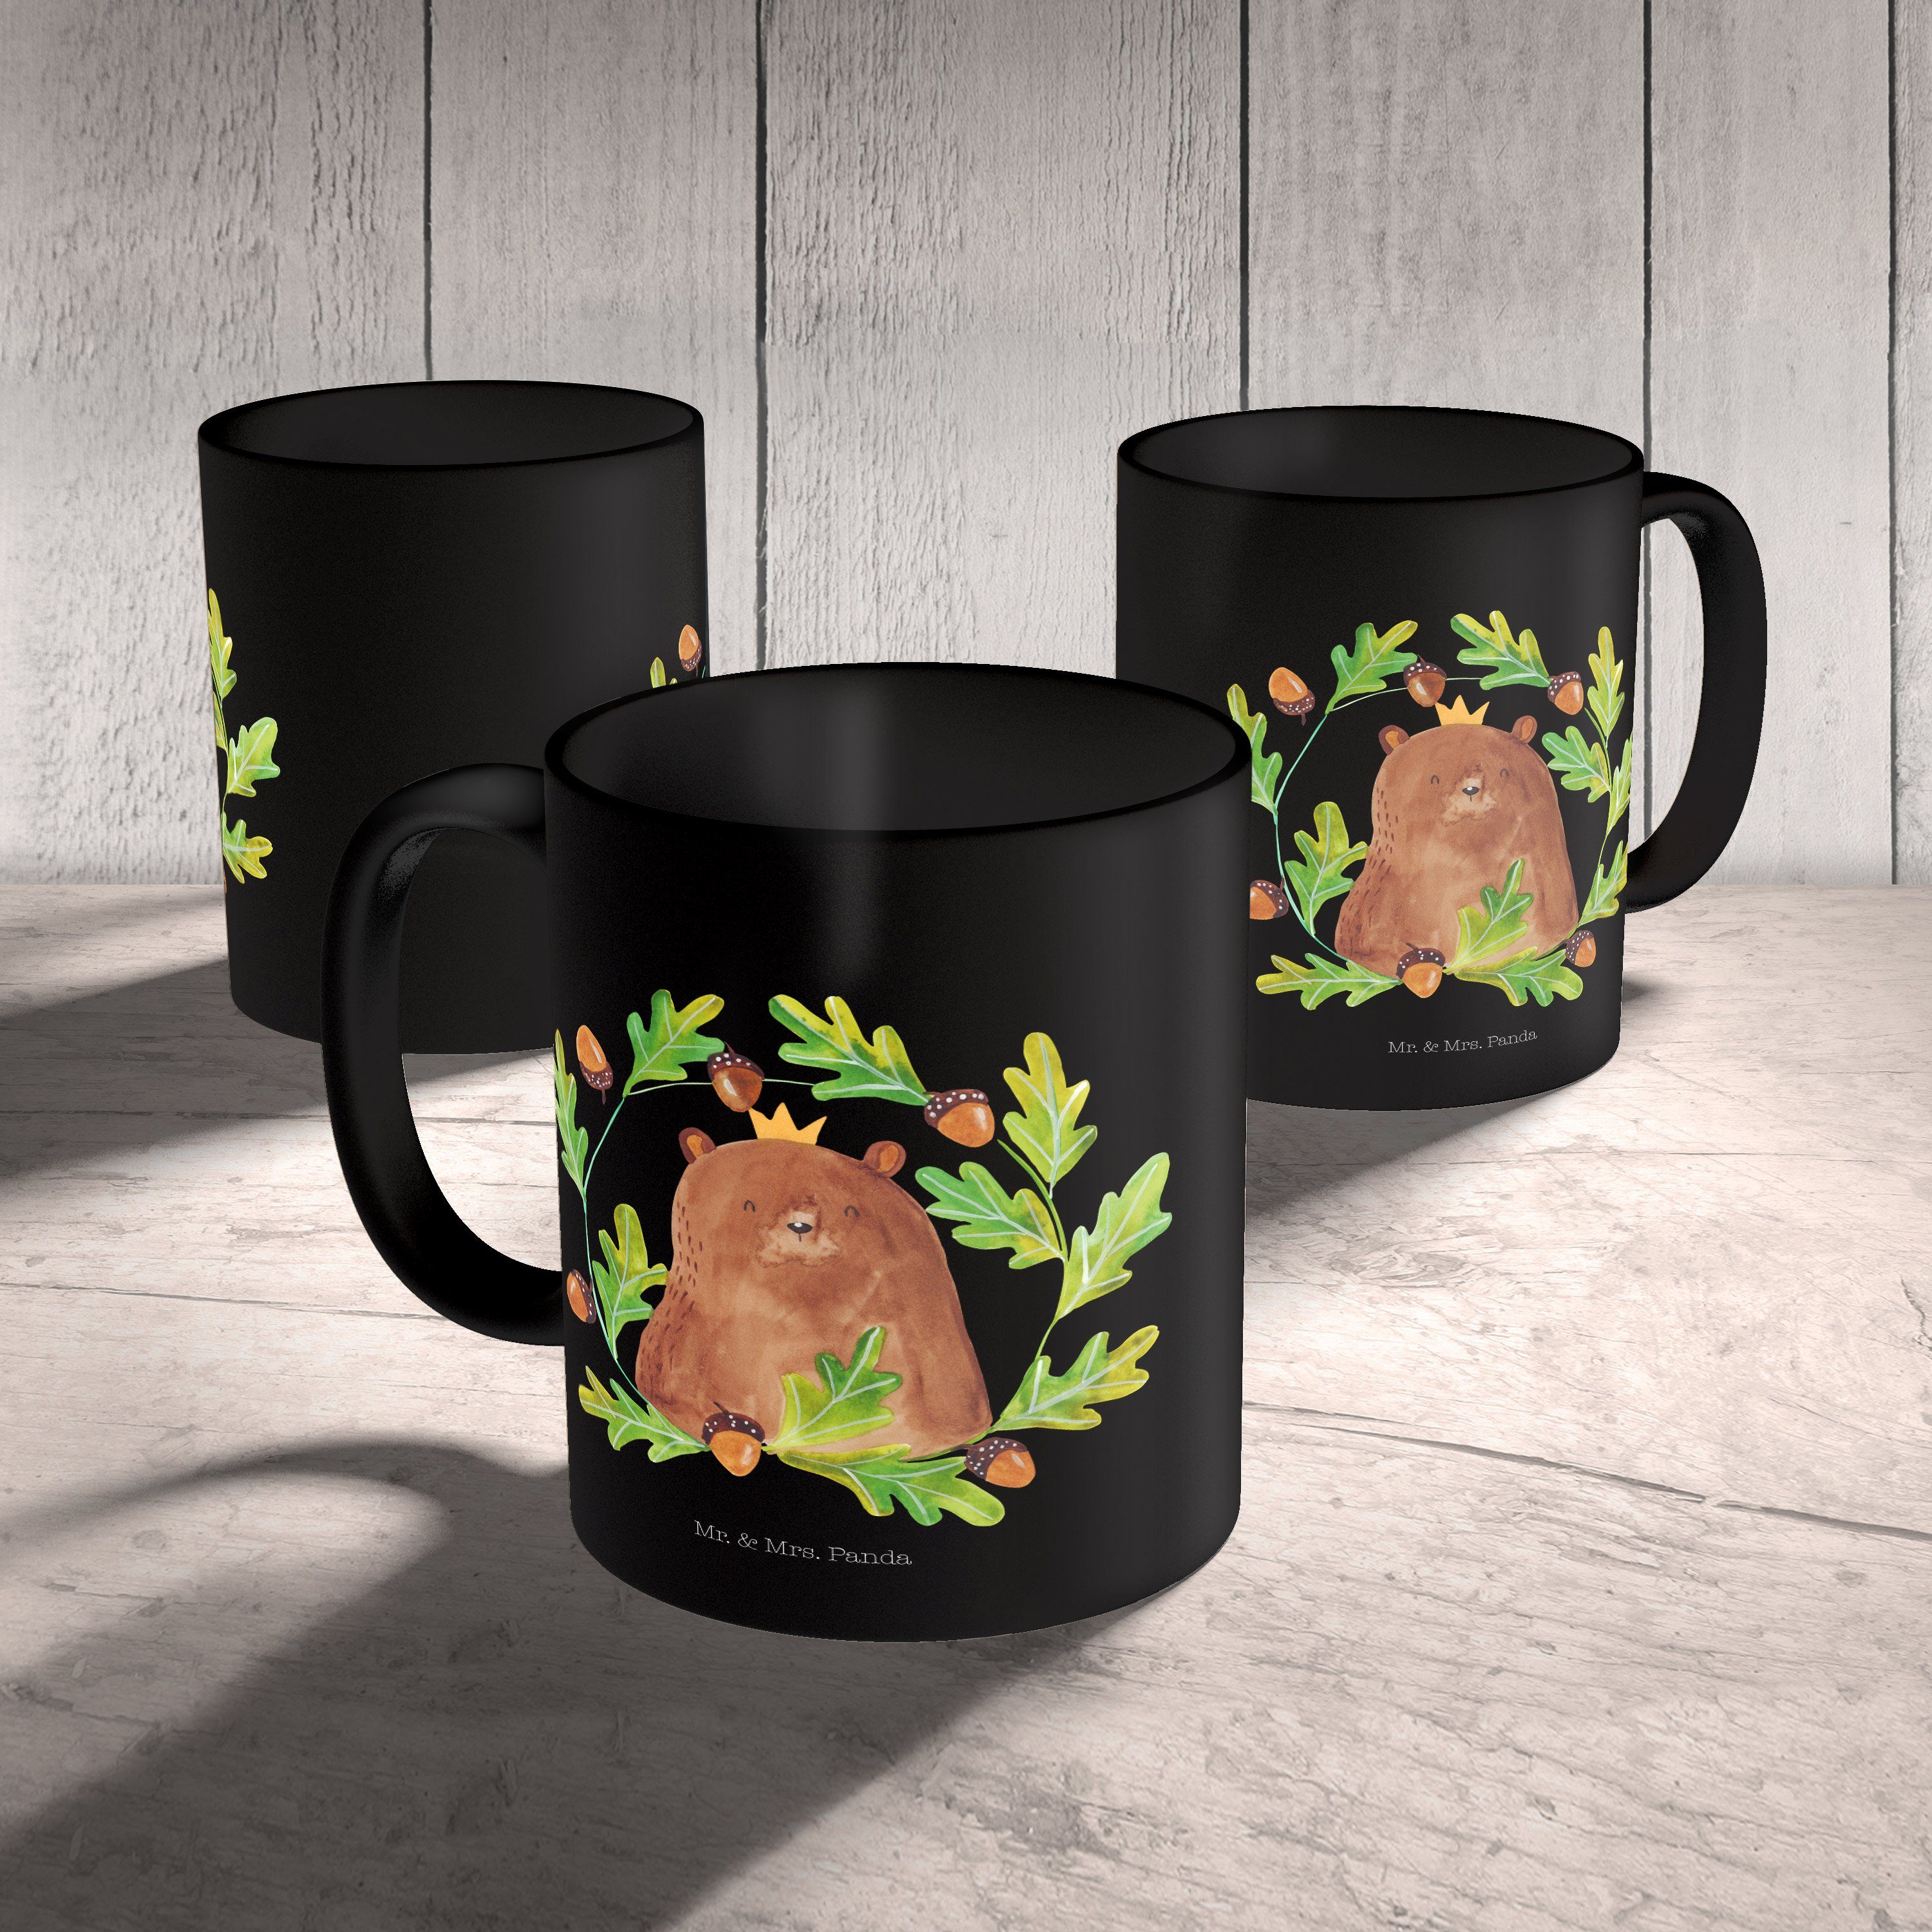 Mr. & Mrs. Panda Tasse Geschenk, Schwarz Bär Schwarz Kaffeetasse, T, - - König Keramik Geschenk Tasse, Teddy